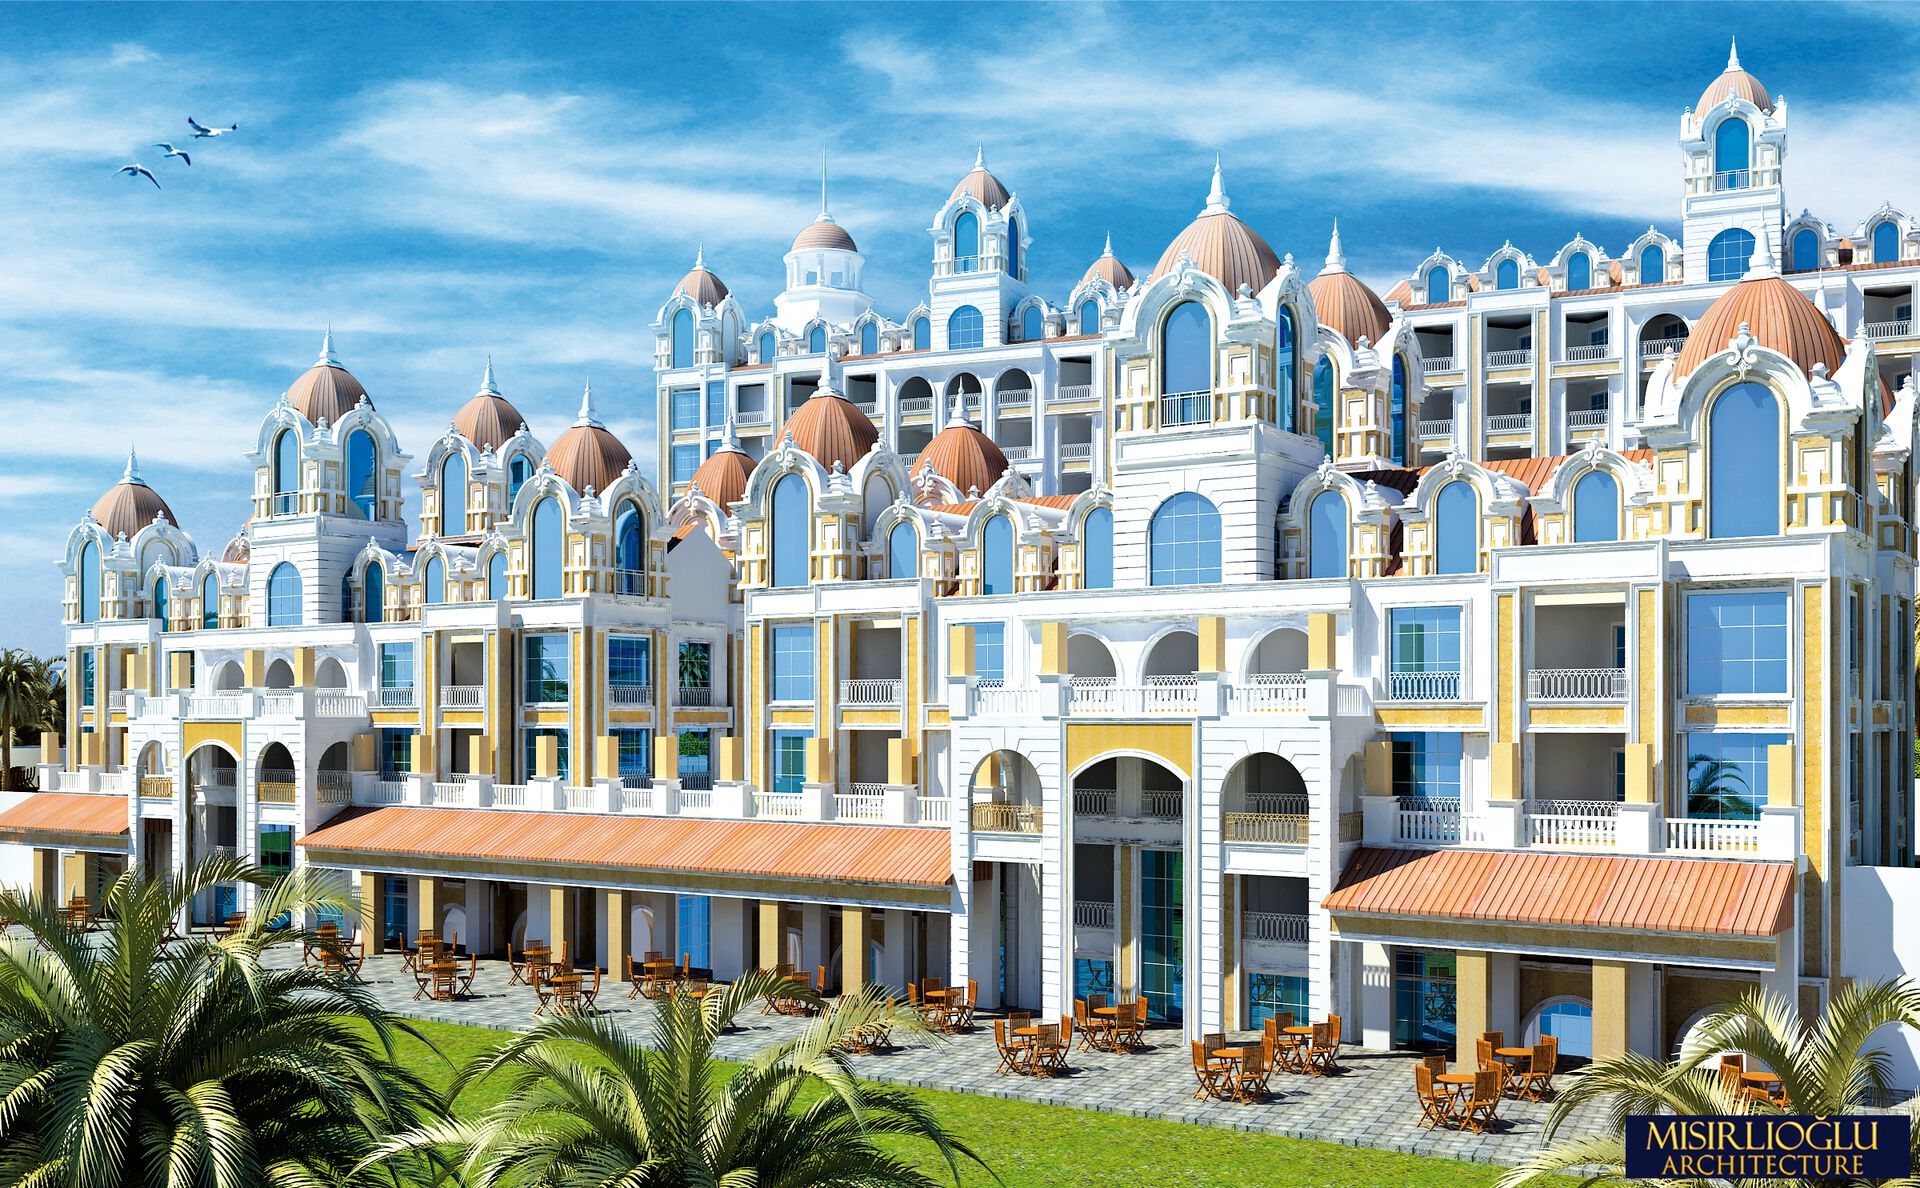 Turquie - Antalya - Hôtel Side Premium 5*